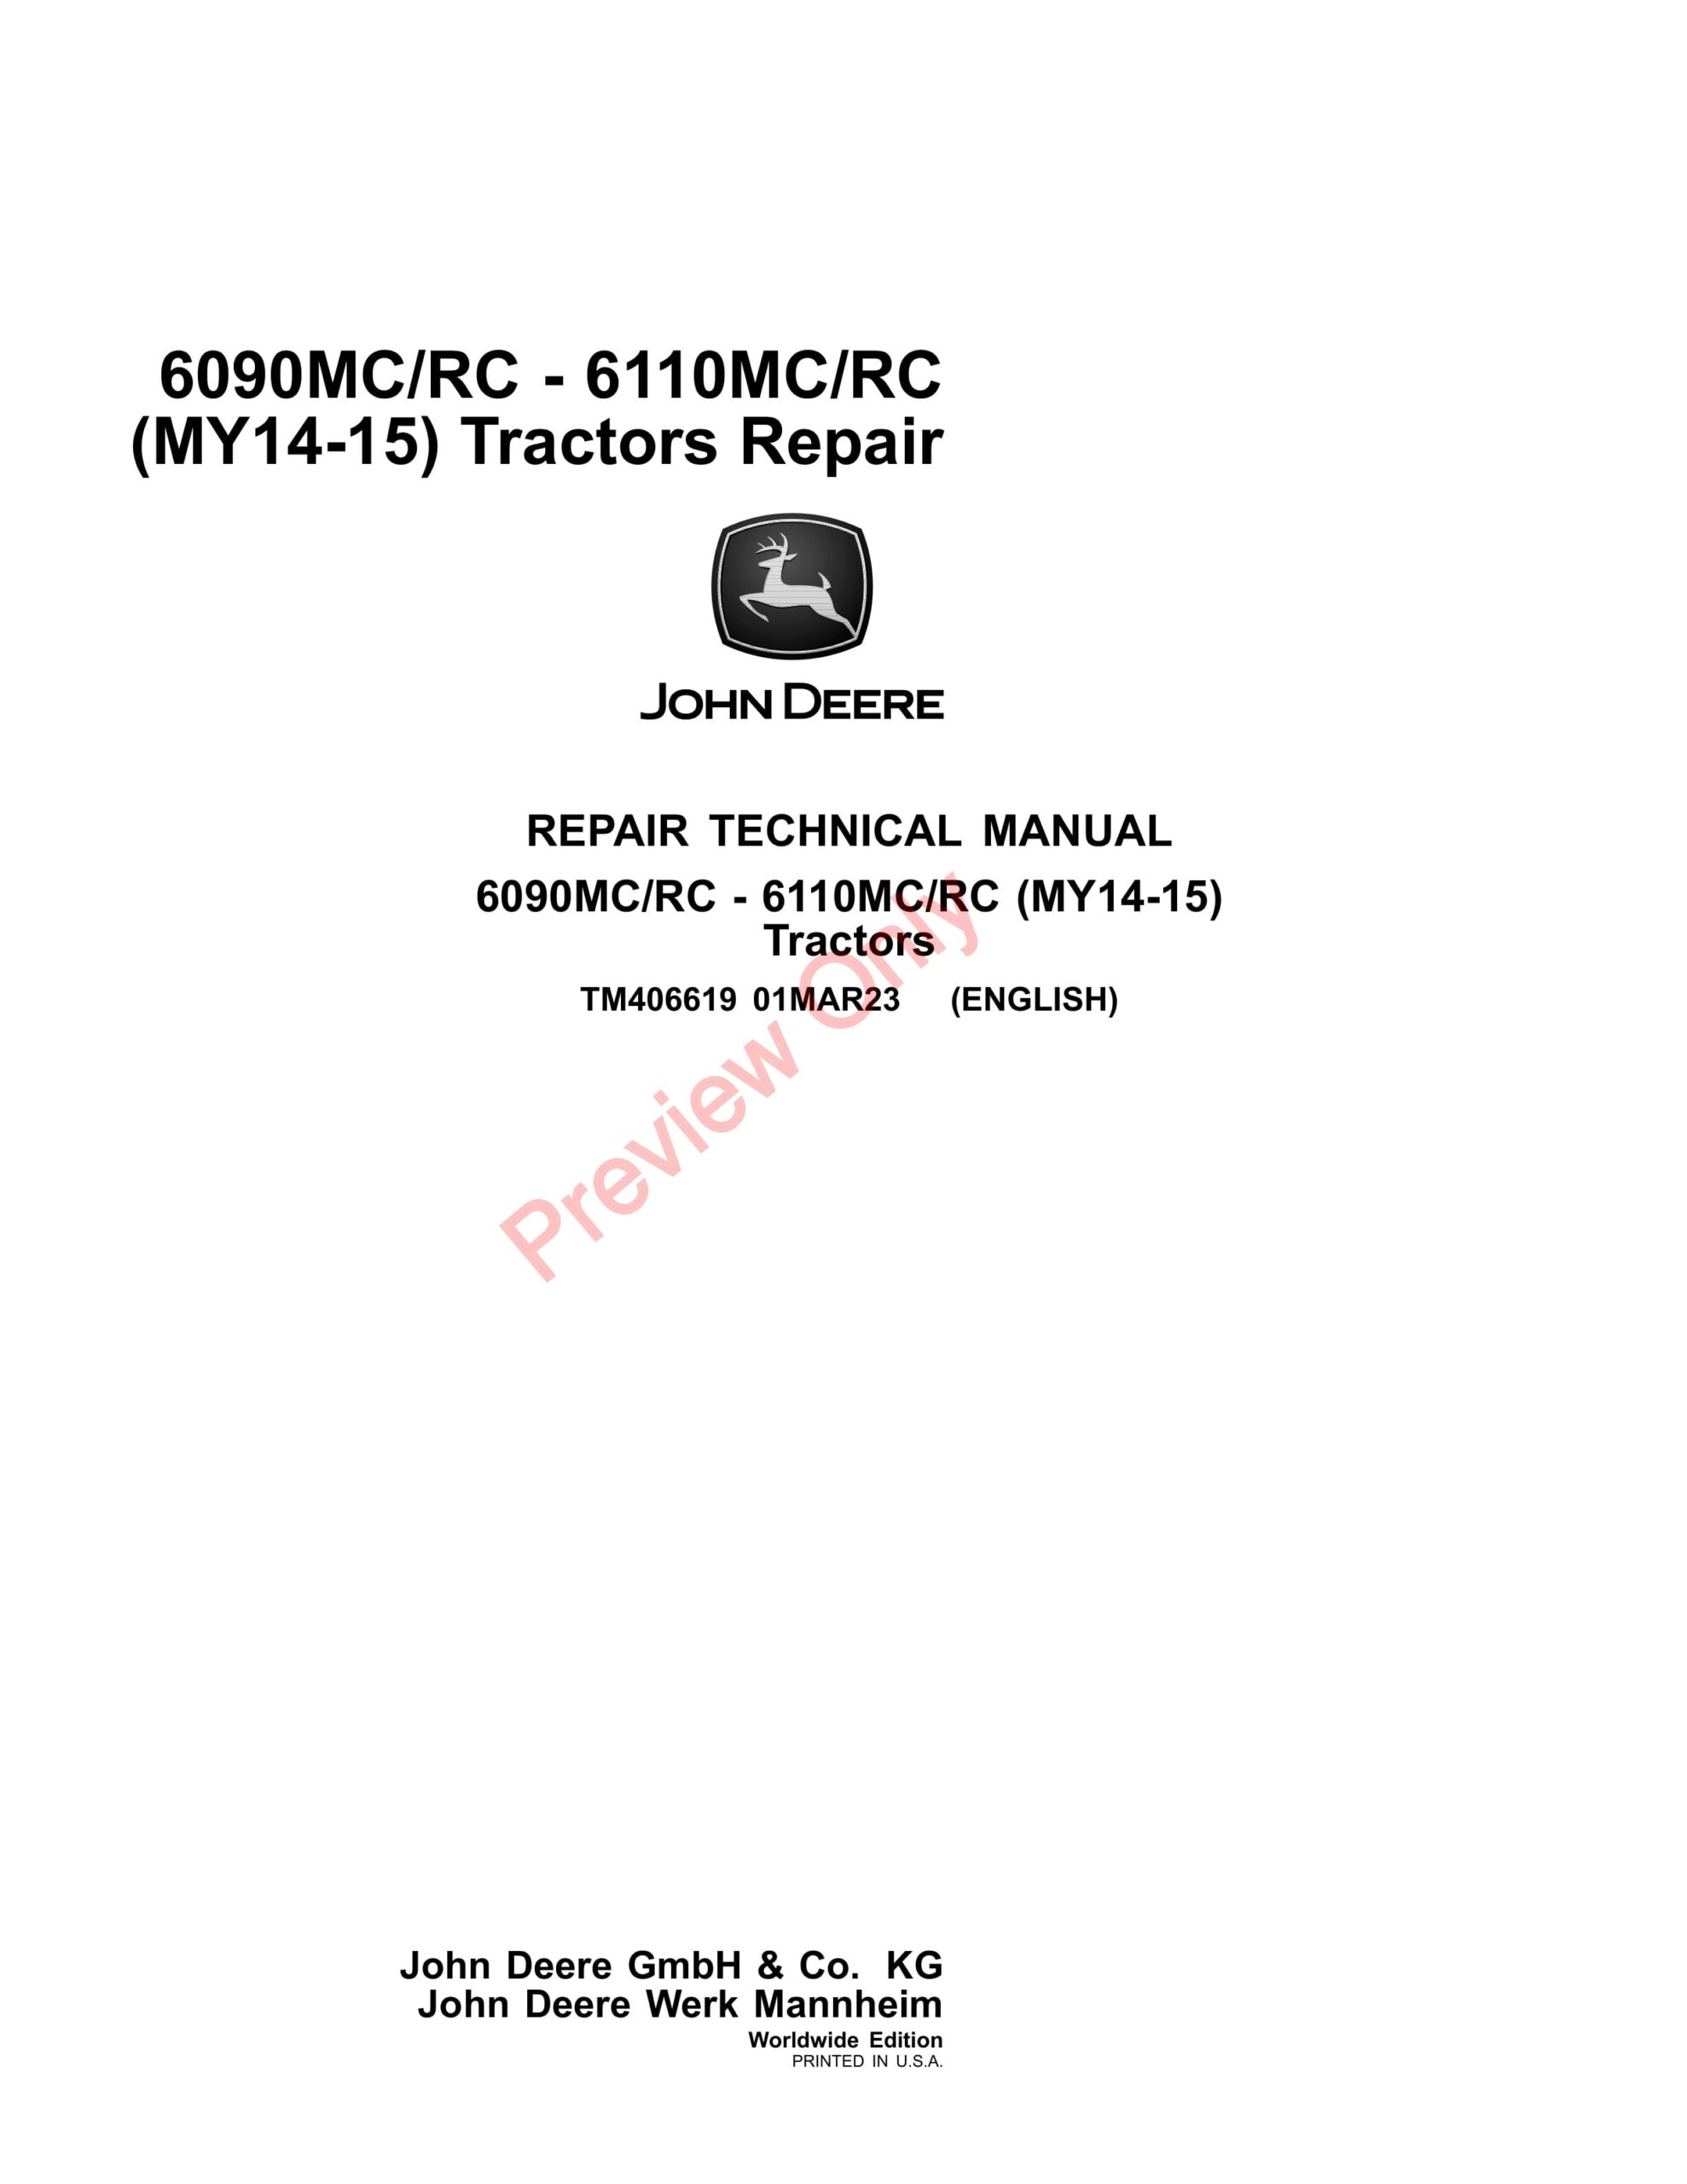 John Deere 6090MCRC – 6110MCRC (MY14-15) Tractors Repair Technical Manual TM406619 01MAR23-1